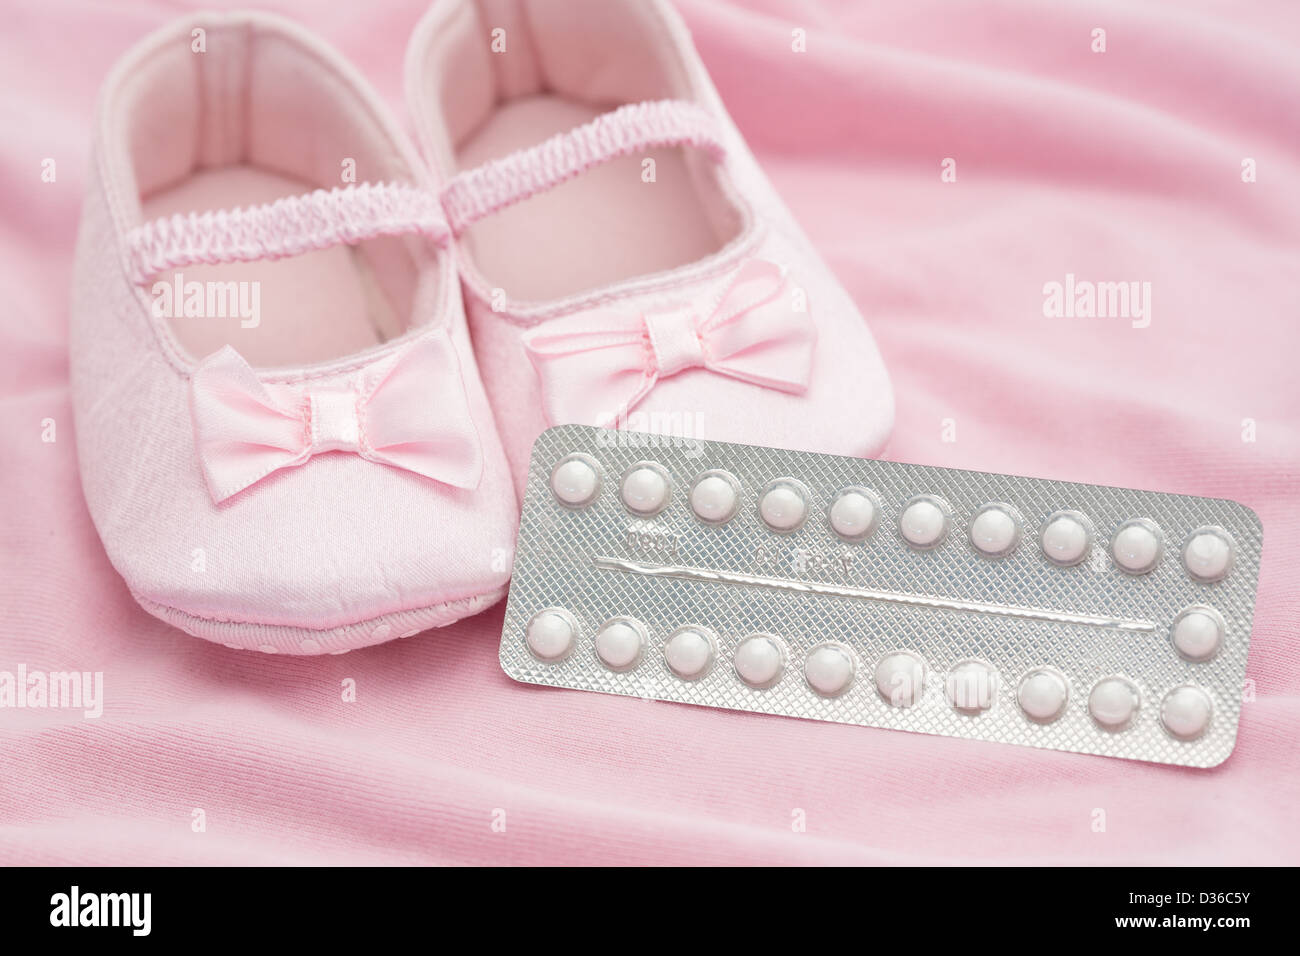 Pilule contraceptive paquet avec chaussons pour bébé Banque D'Images